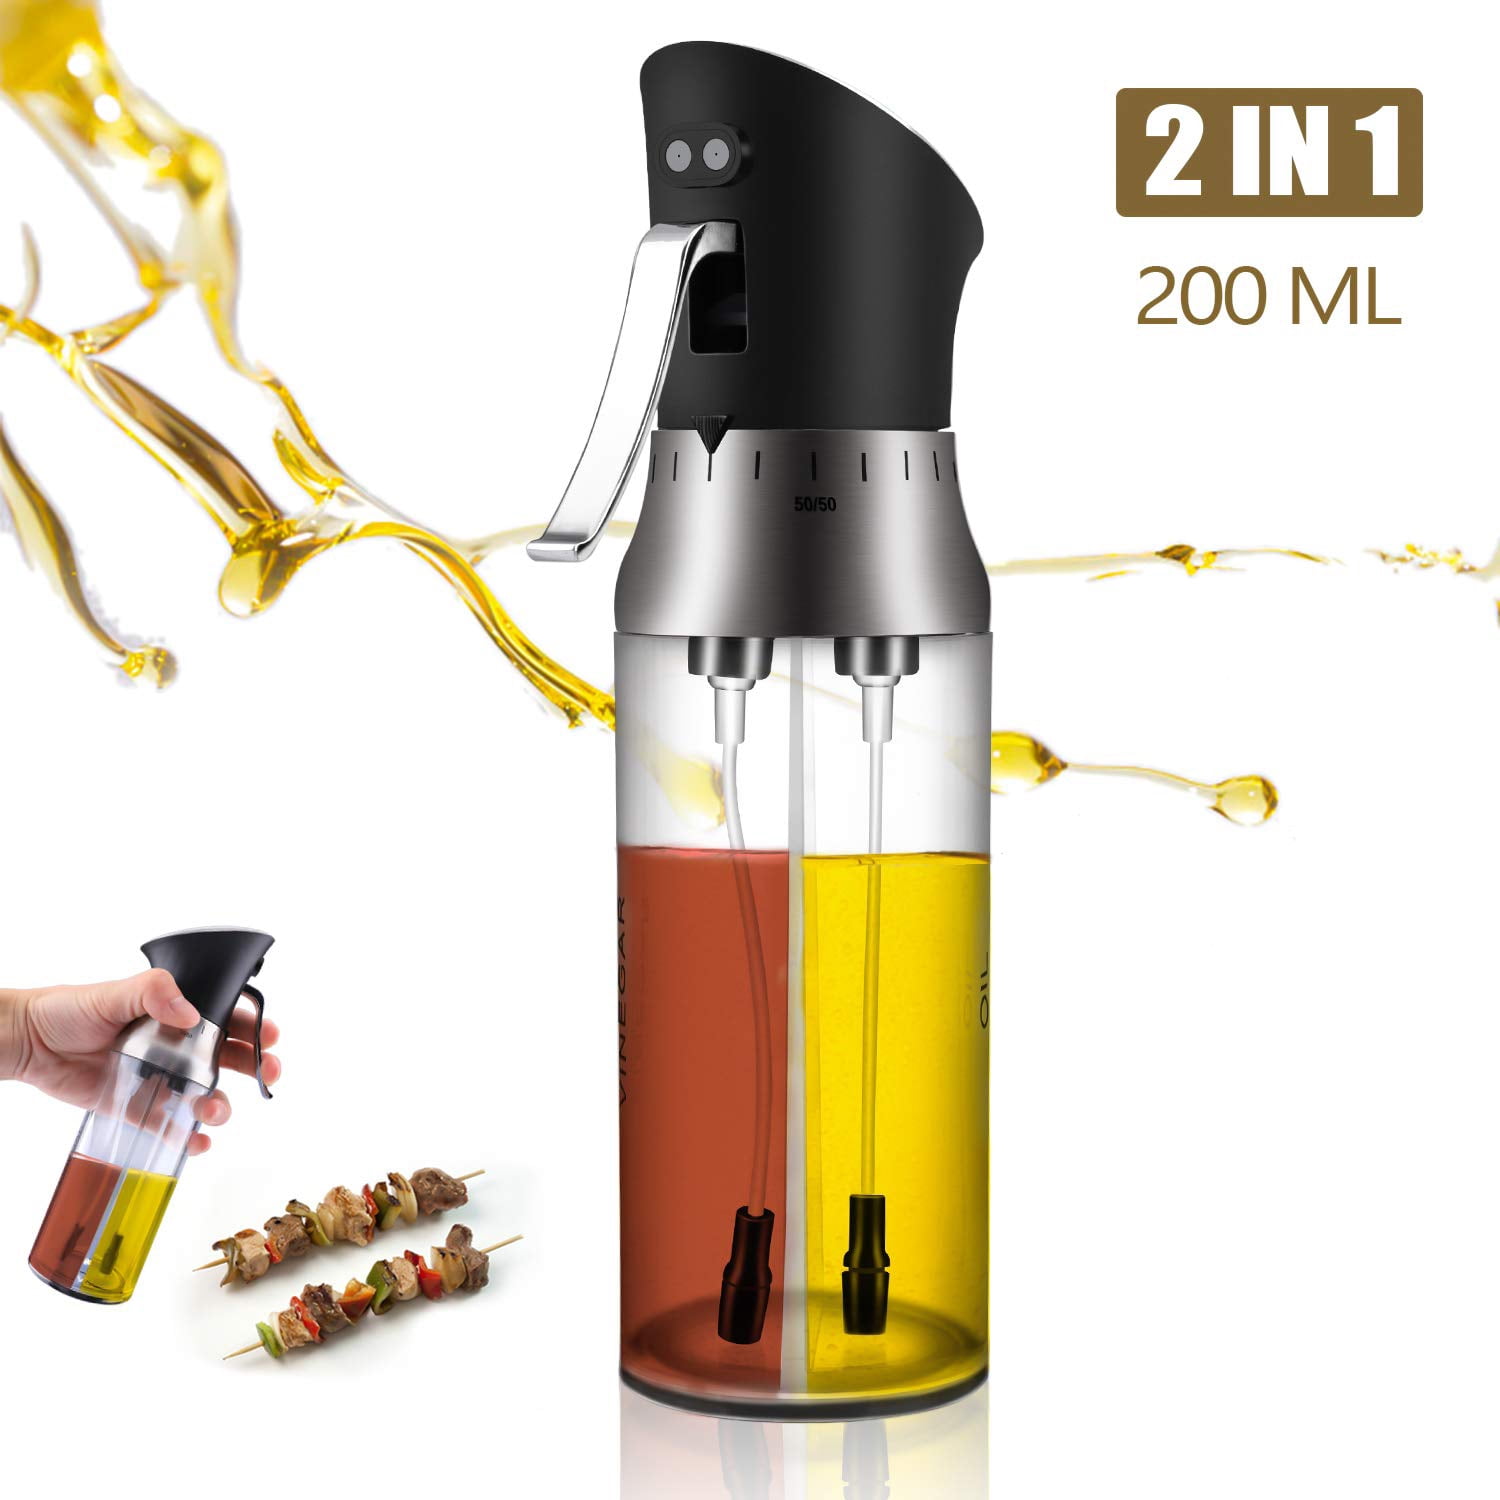 2 Pack Oil Vinegar Sprayer Dispenser for Cooking Olive Oil Sprayer 200ML Stainless Steel Glass Oil Spray Bottle with Funnel Oil Spray Bottle for Kitchen Salad BBQ Frying Grilling Baking Roasting